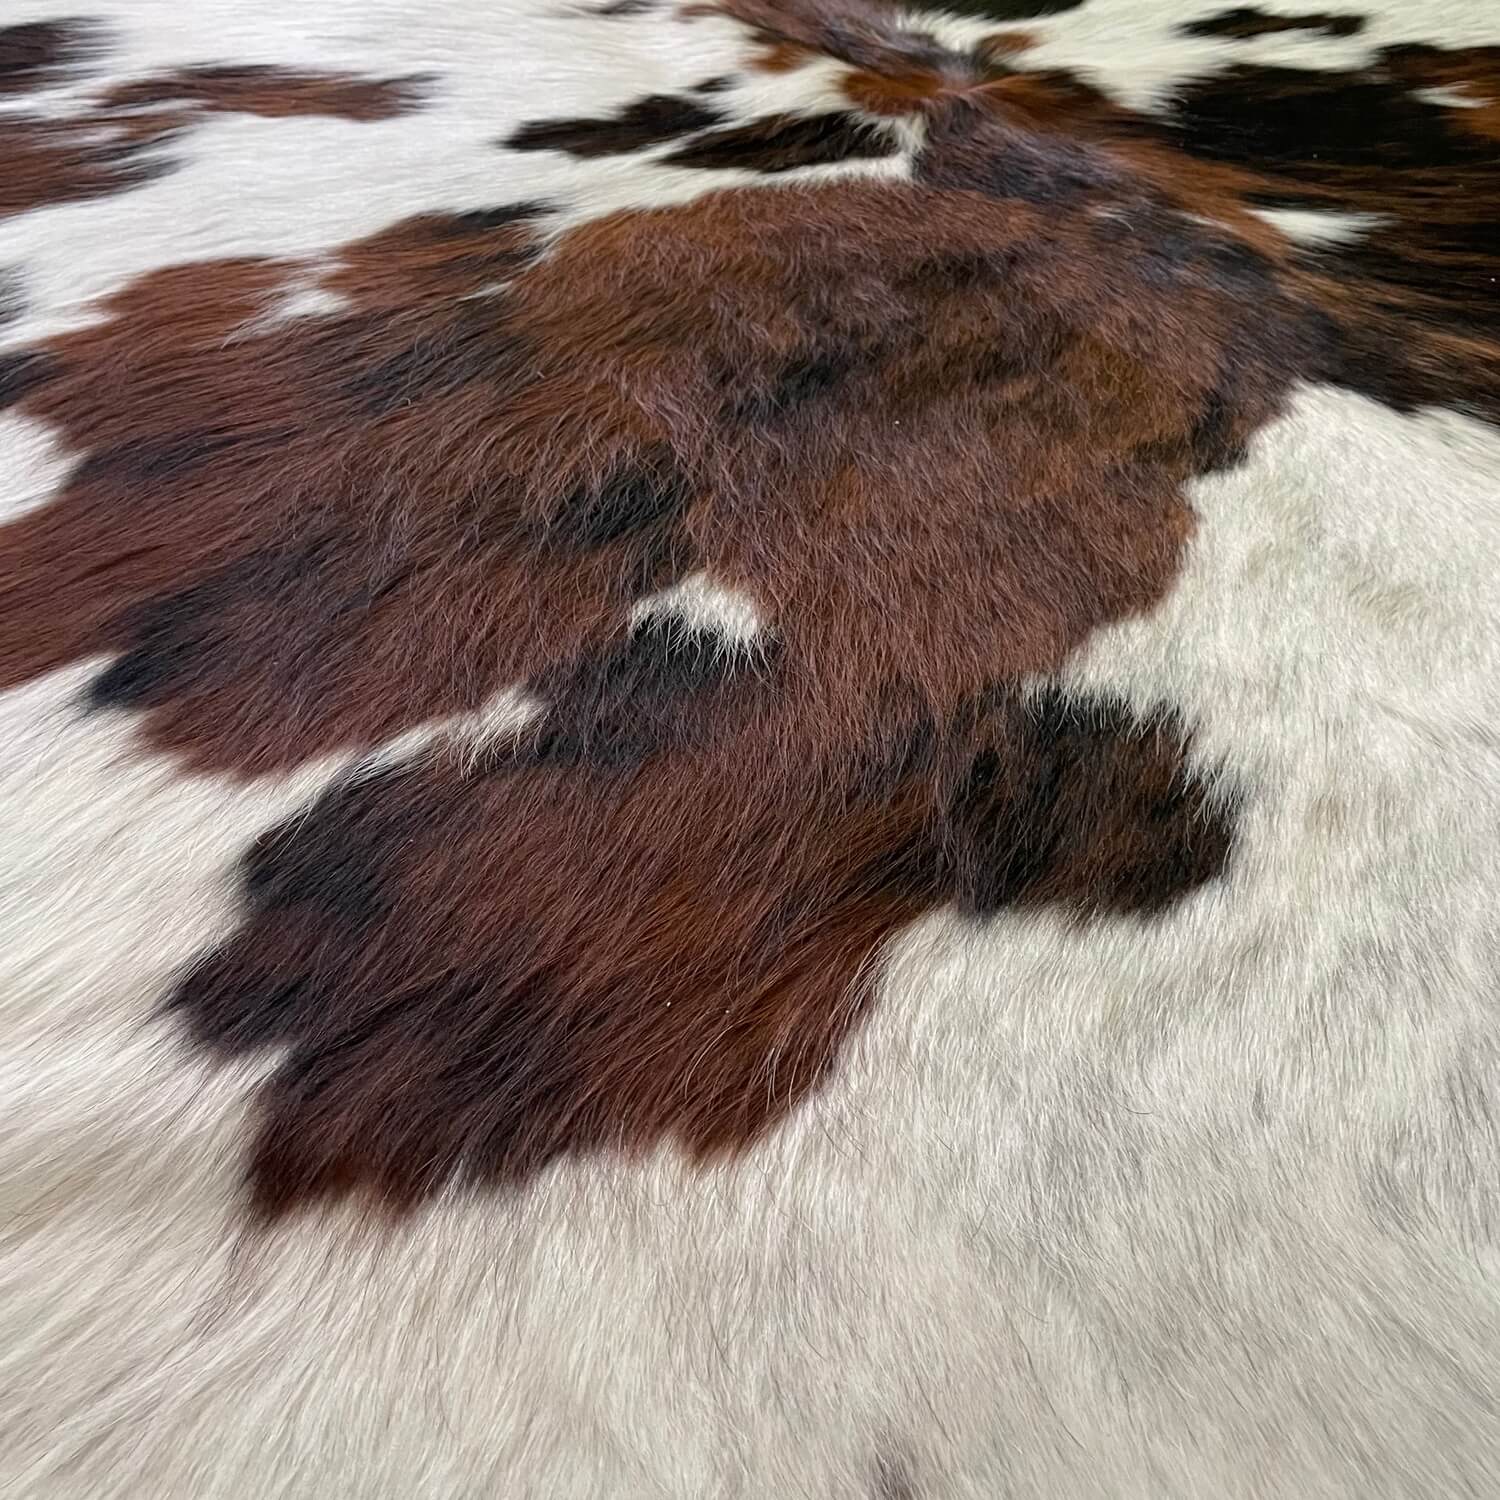 covor piele de vaca alb naturala pestrit tricolor maro si negru, zoom